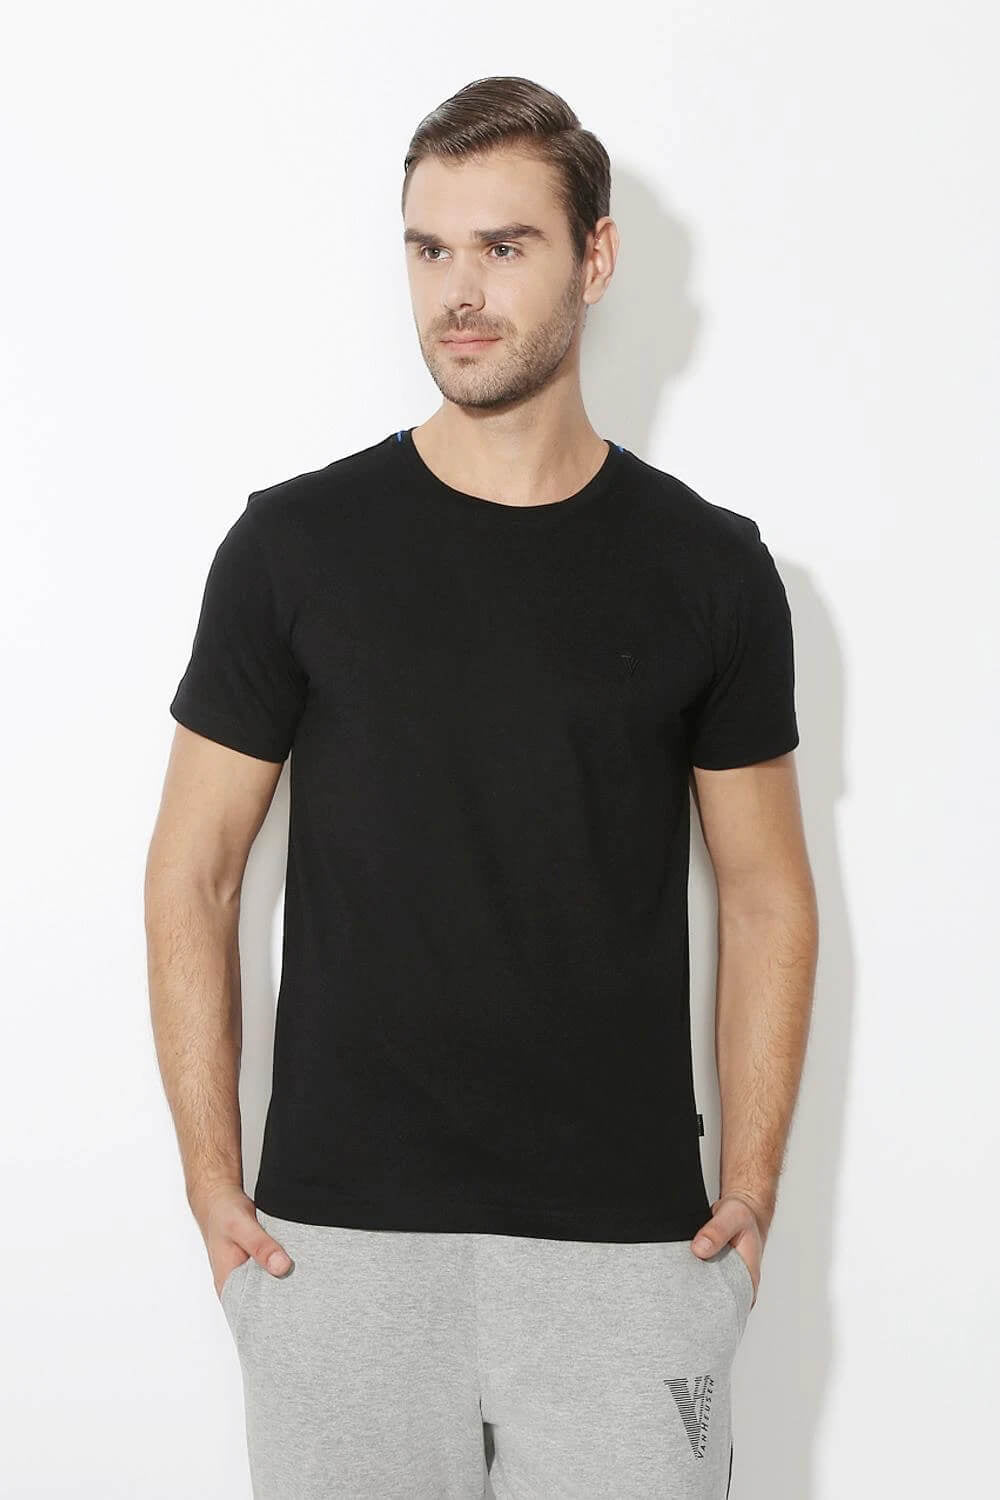 Van Heusen Black Tshirt for Men #60021